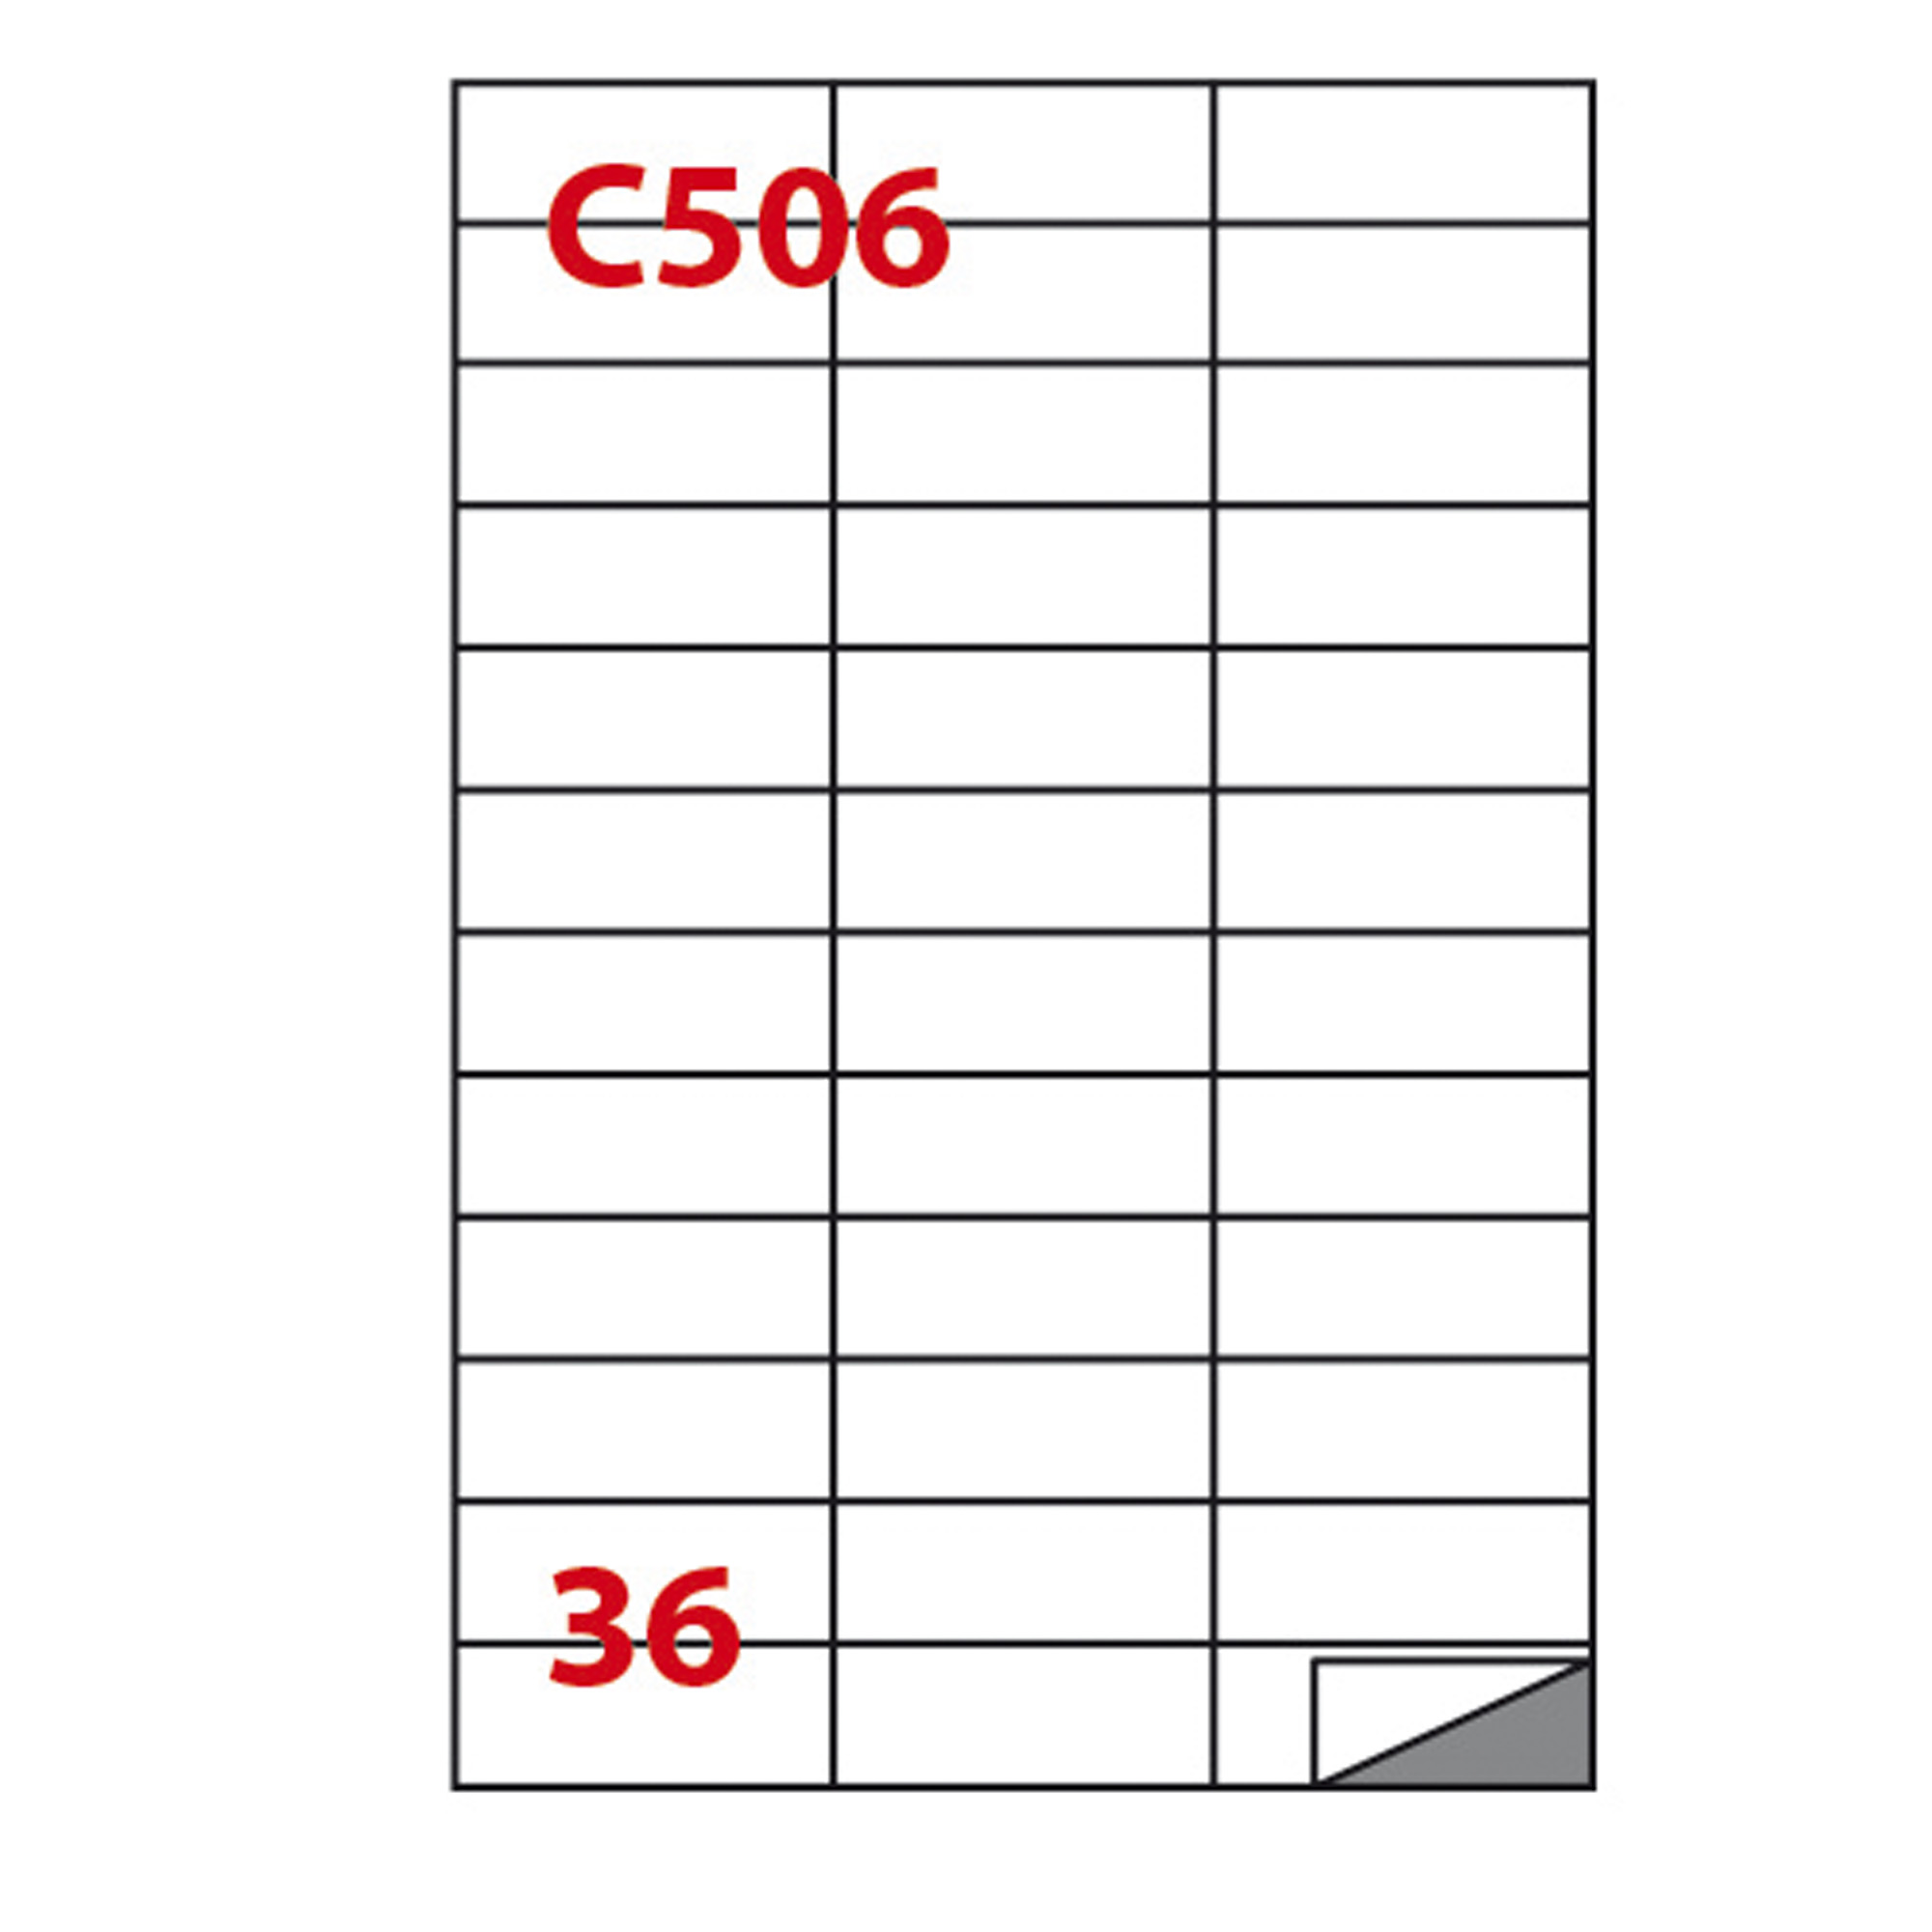 Etichetta adesiva C506 - permanente - 70x24,25 mm - 36 etichette per foglio - bianco - Markin - scatola 100 fogli A4